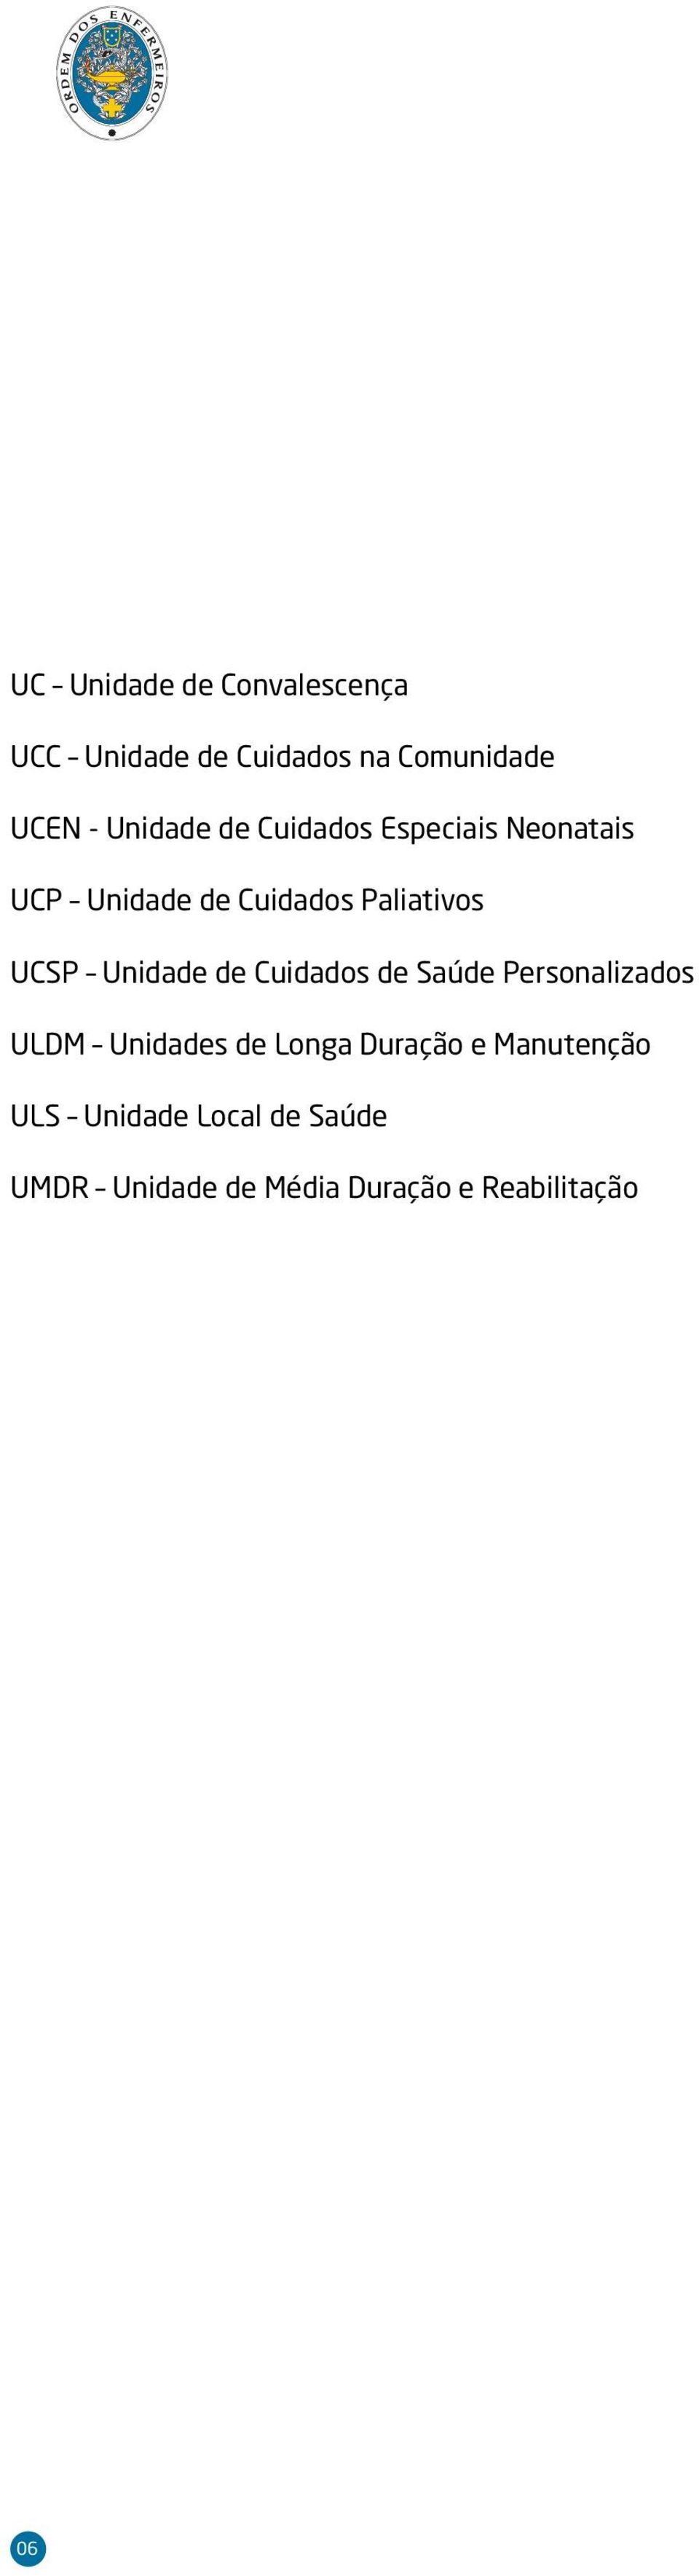 UCSP Unidade de Cuidados de Saúde Personalizados ULDM Unidades de Longa